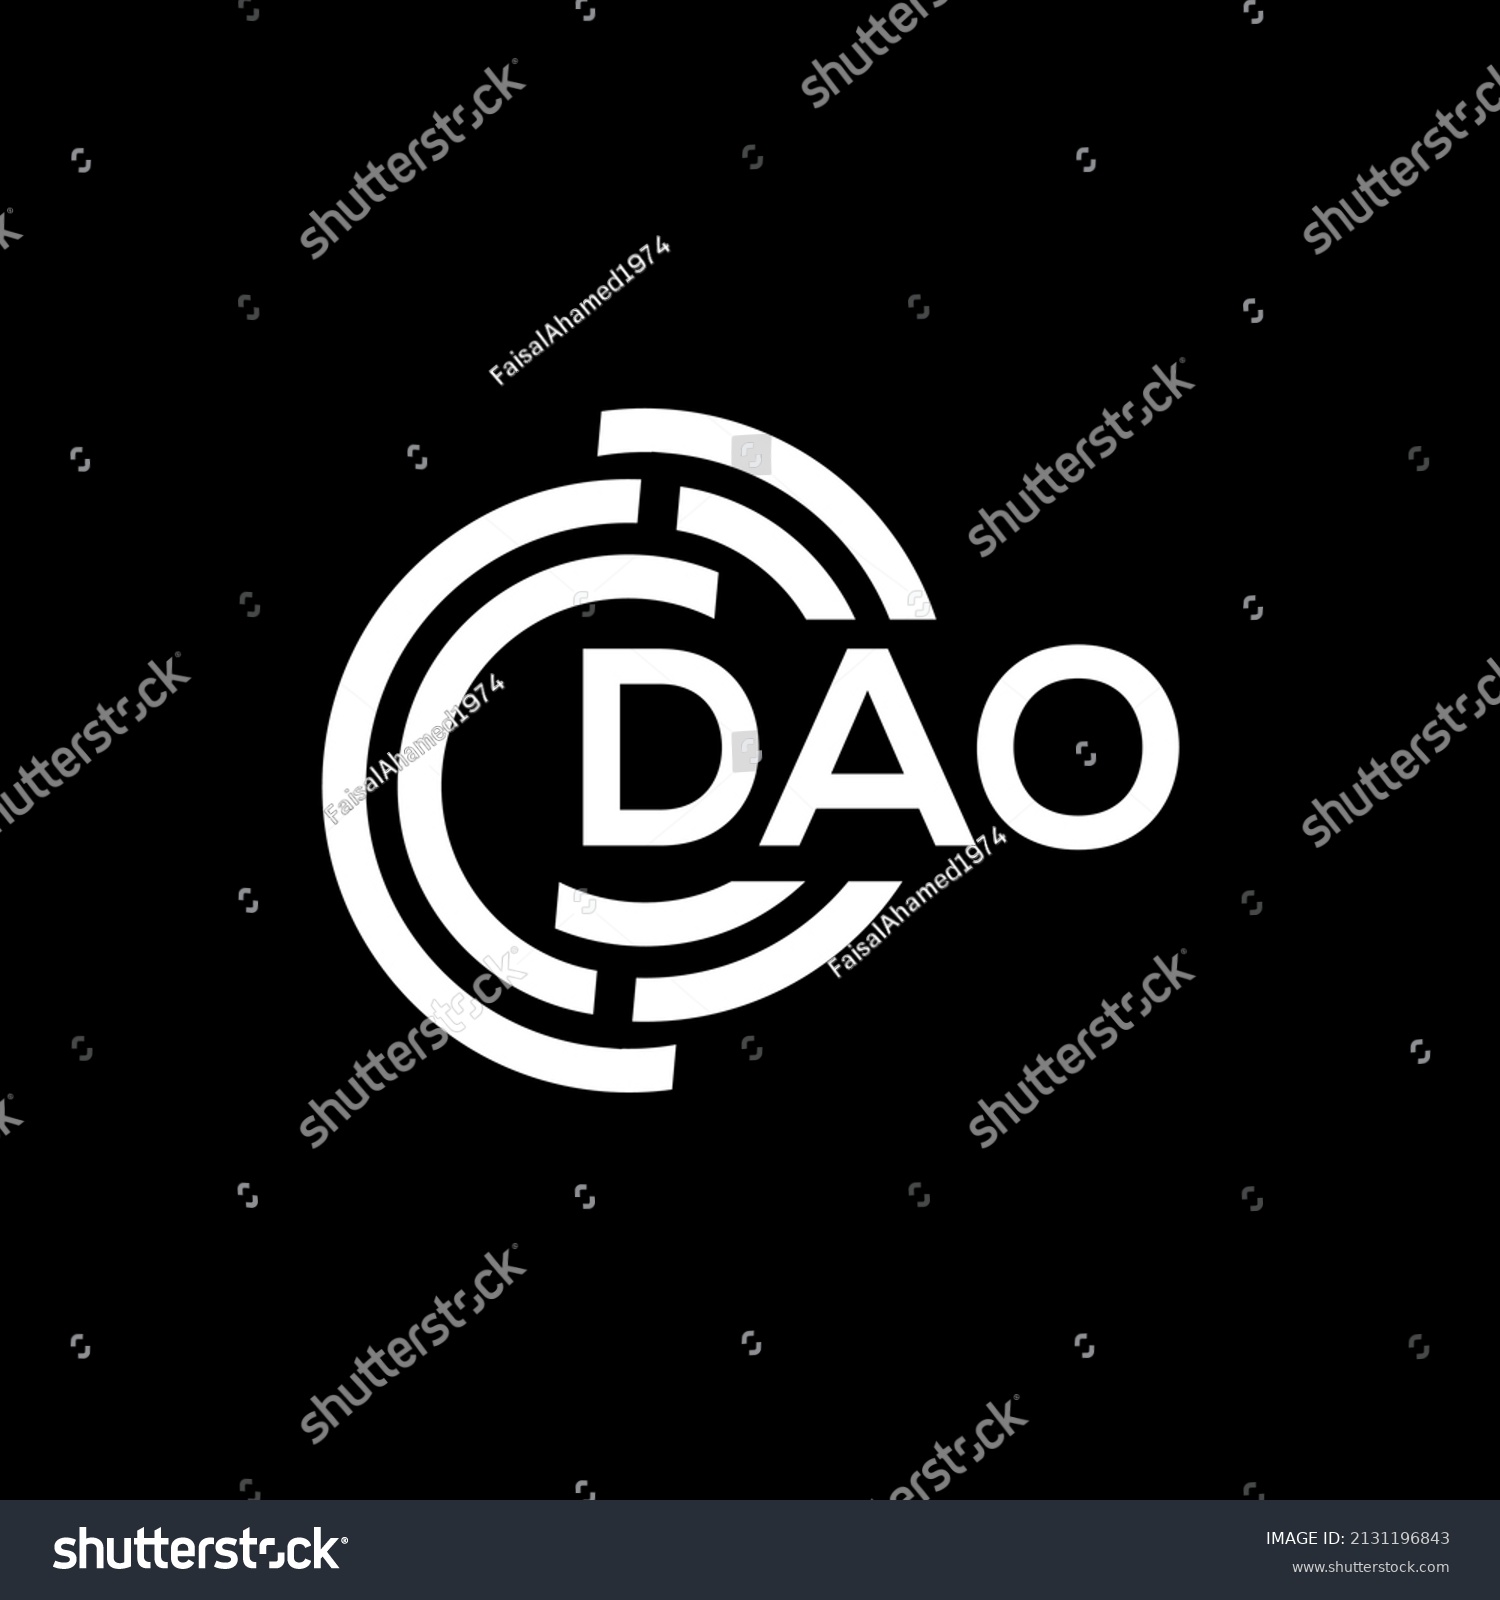 SVG of DAO letter logo design on black background. DAO creative initials letter logo concept. DAO letter design.
 svg